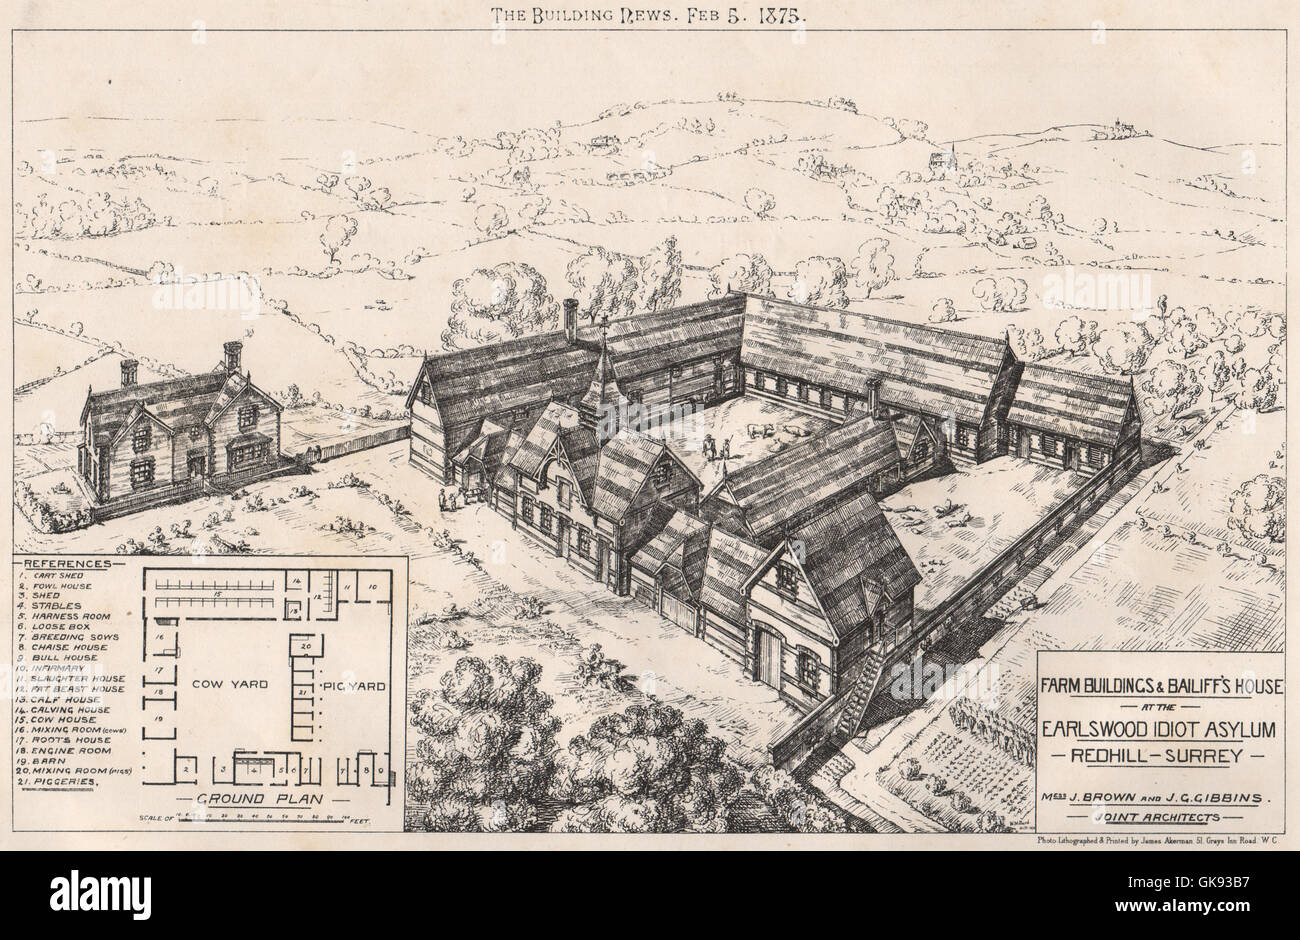 Les bâtiments de ferme et maison du Bailli, Earlswood idiot de l'asile, Redhill, Surrey, 1875 Banque D'Images